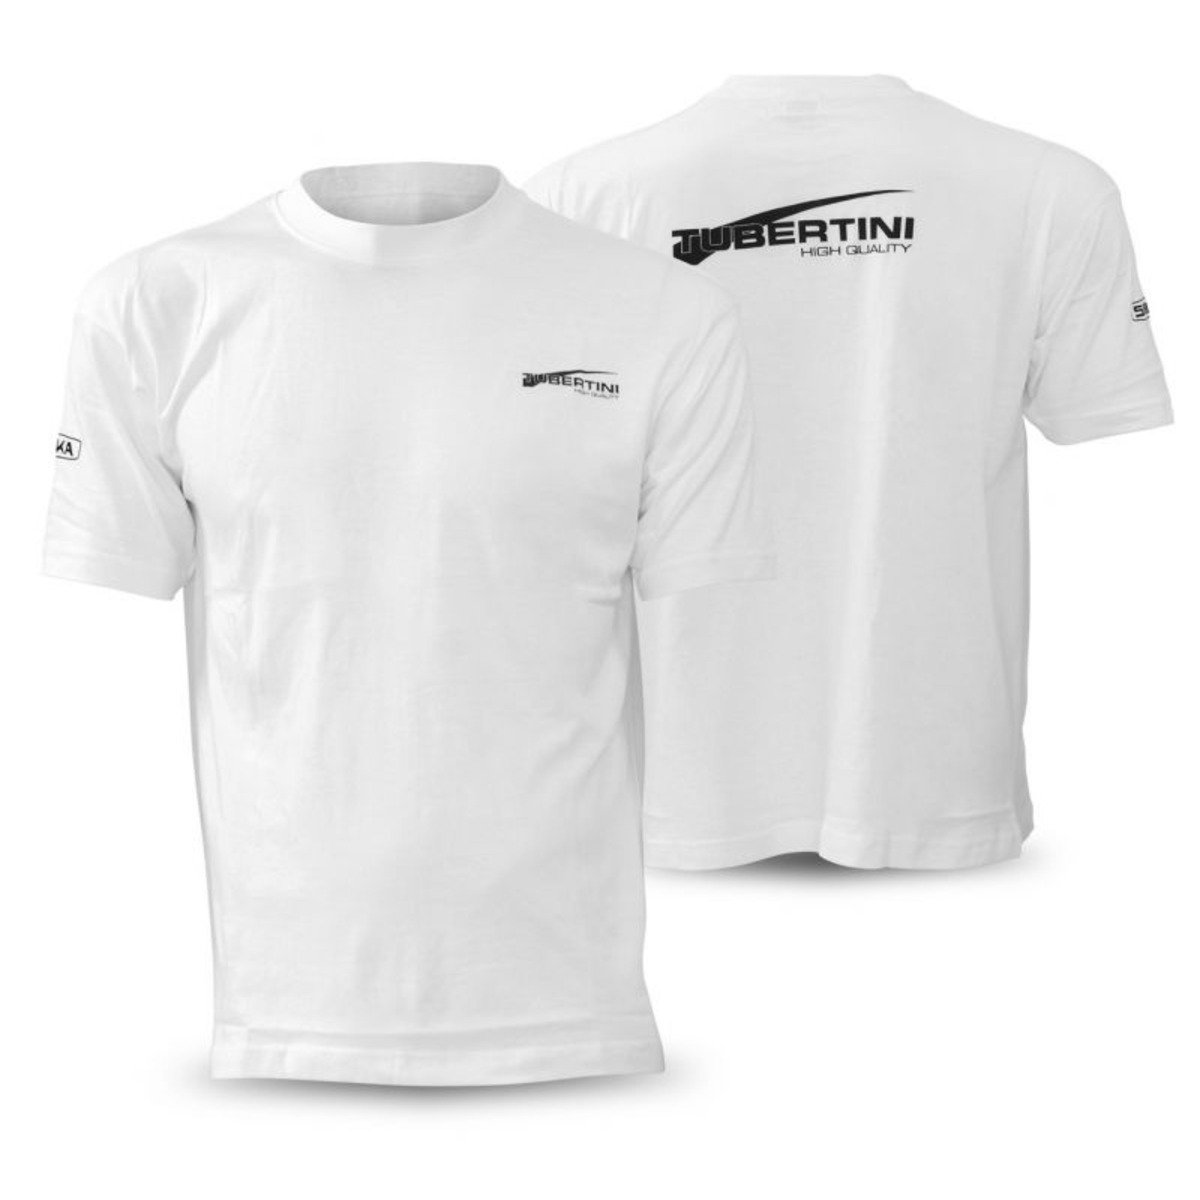 Tubertini T-Shirt White - M